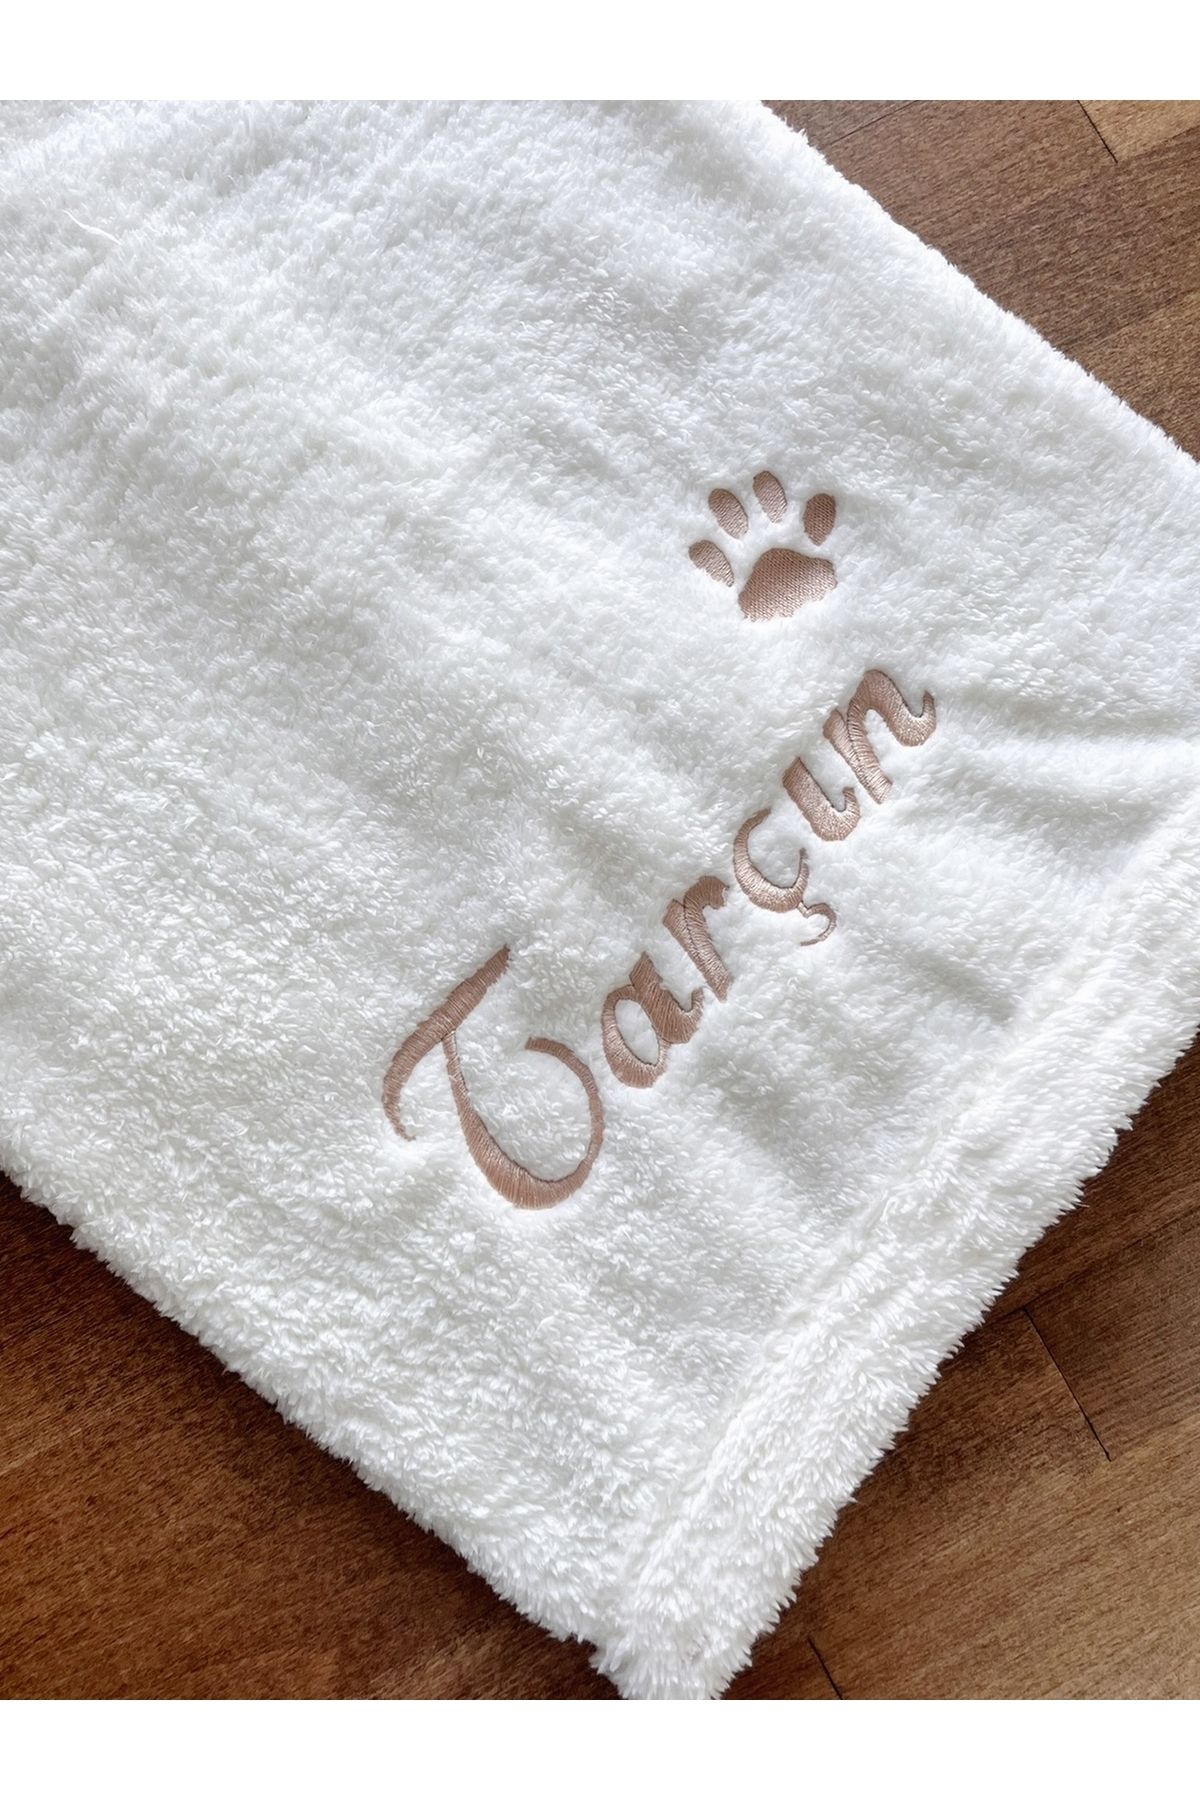 ULUBEN İsimli Kişiye İsme Özel Nakış İşlemeli Ekru Beyaz Kedi Köpek Battaniyesi Yıkanabilir Premium Peluş